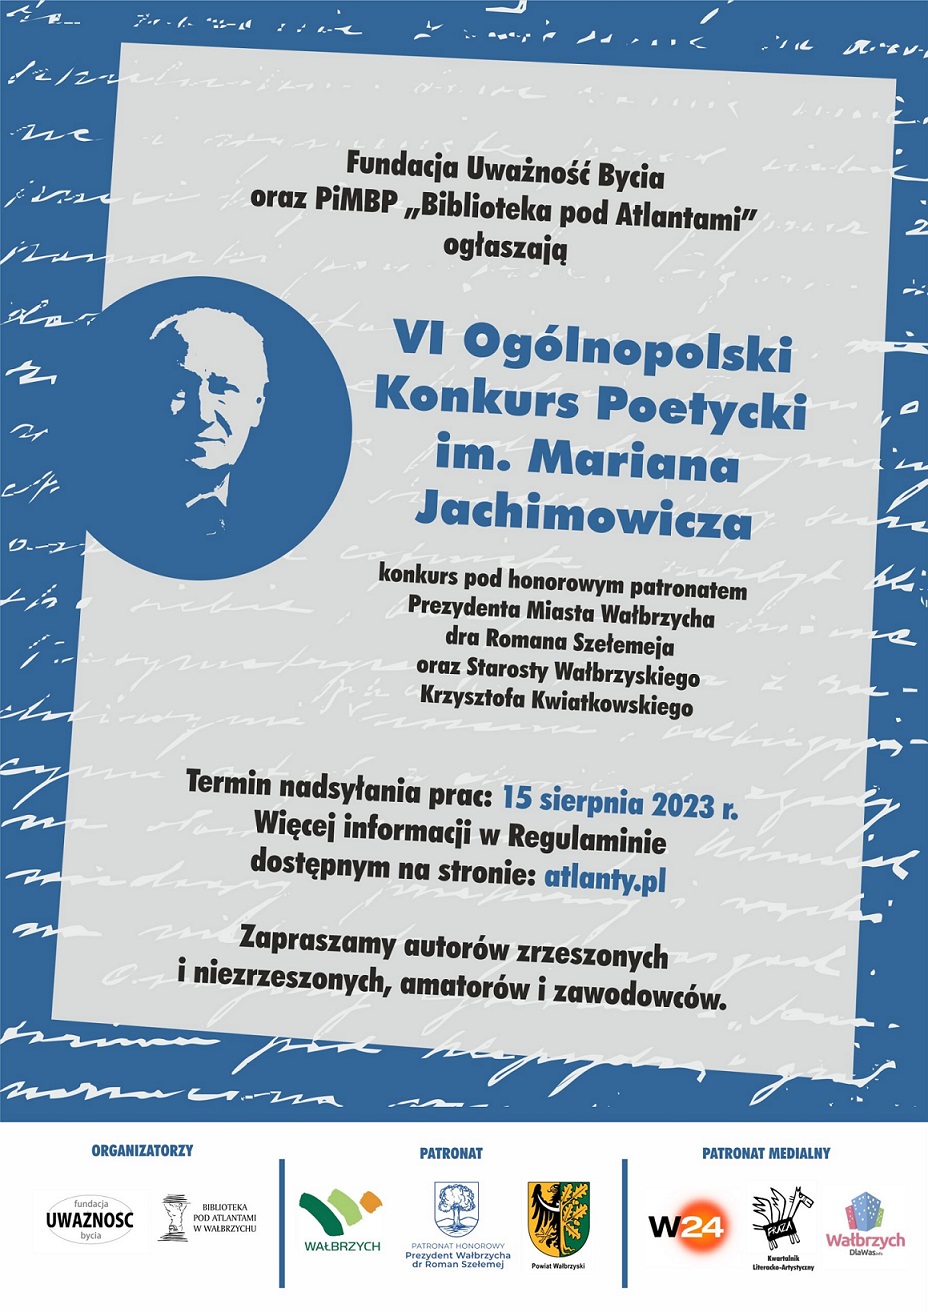 Plakat promujący VI Ogólnopolski Konkurs Poetycki im. Mariana Jachimowicza.